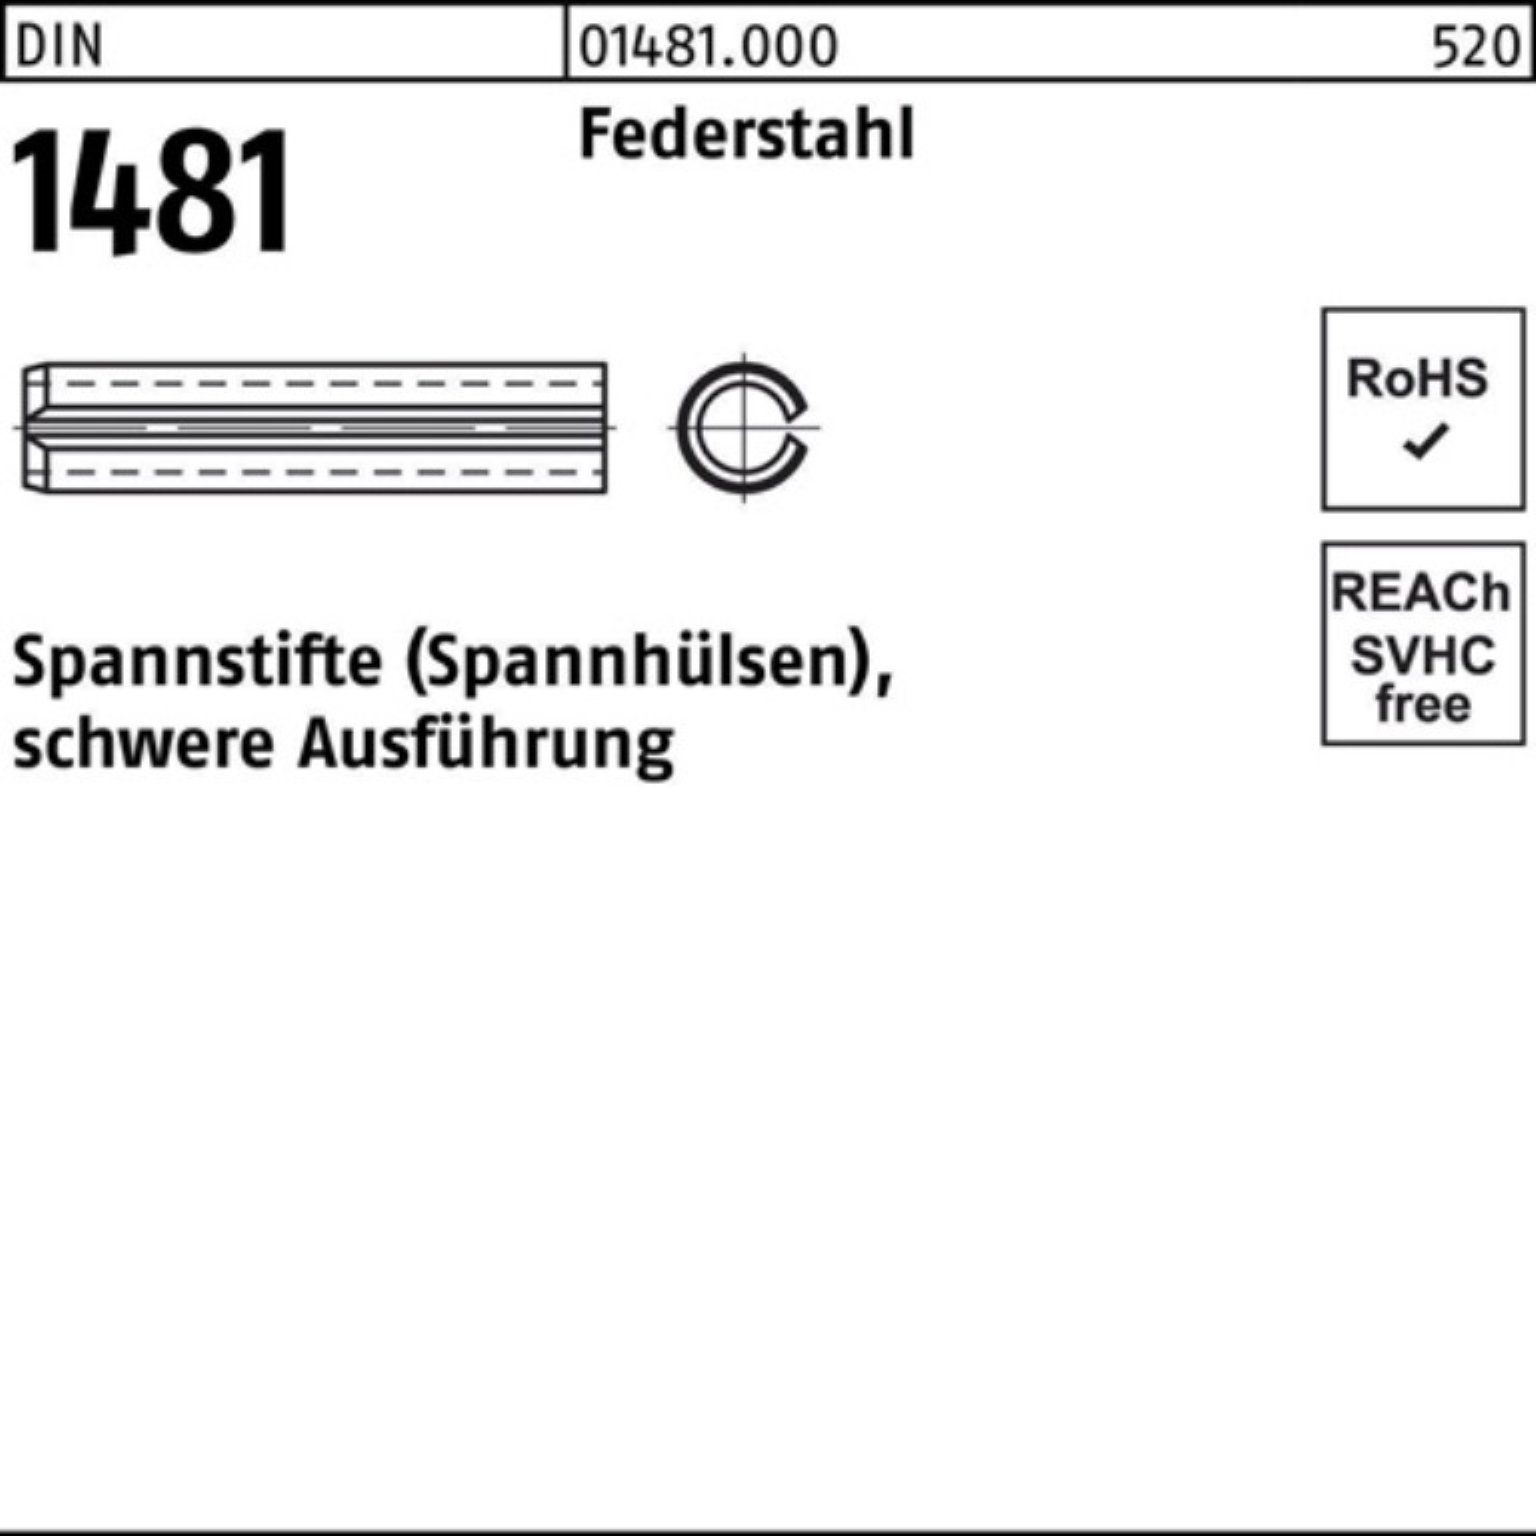 Reyher Spannstift DIN Ausführung Spannstift Pack schwere Federstahl 100er 1481 14x 2 18